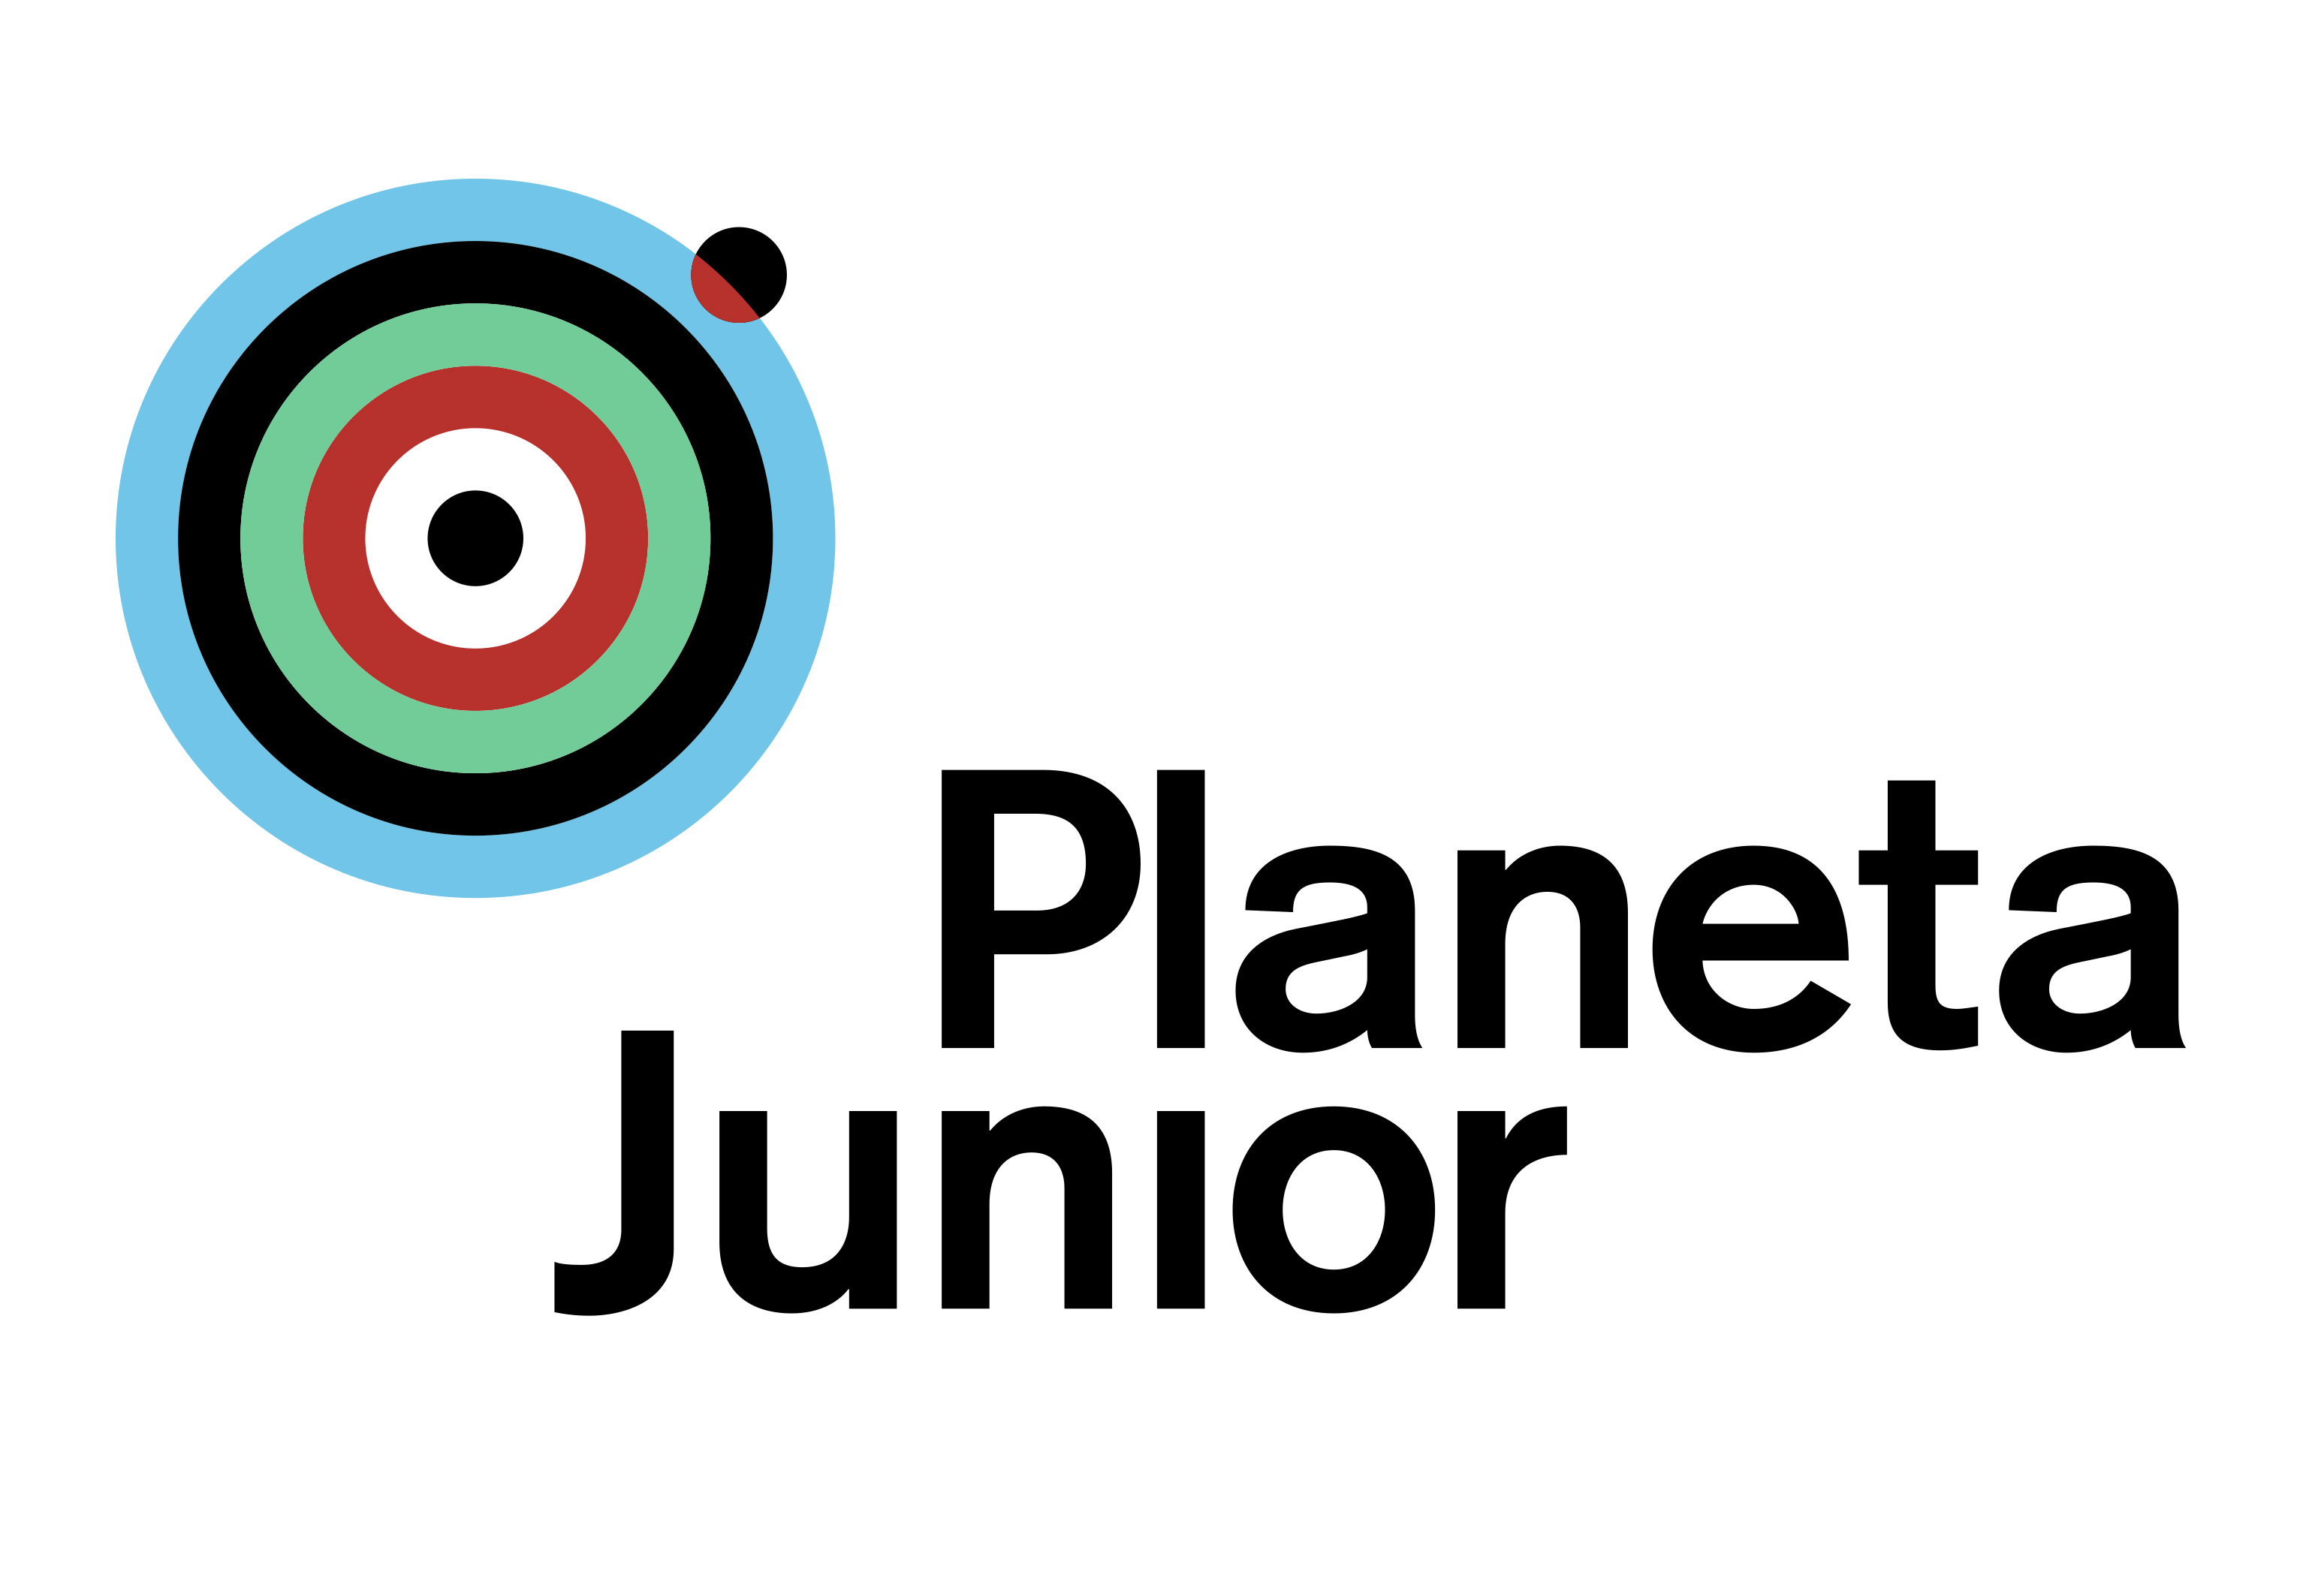 Planeta Junior